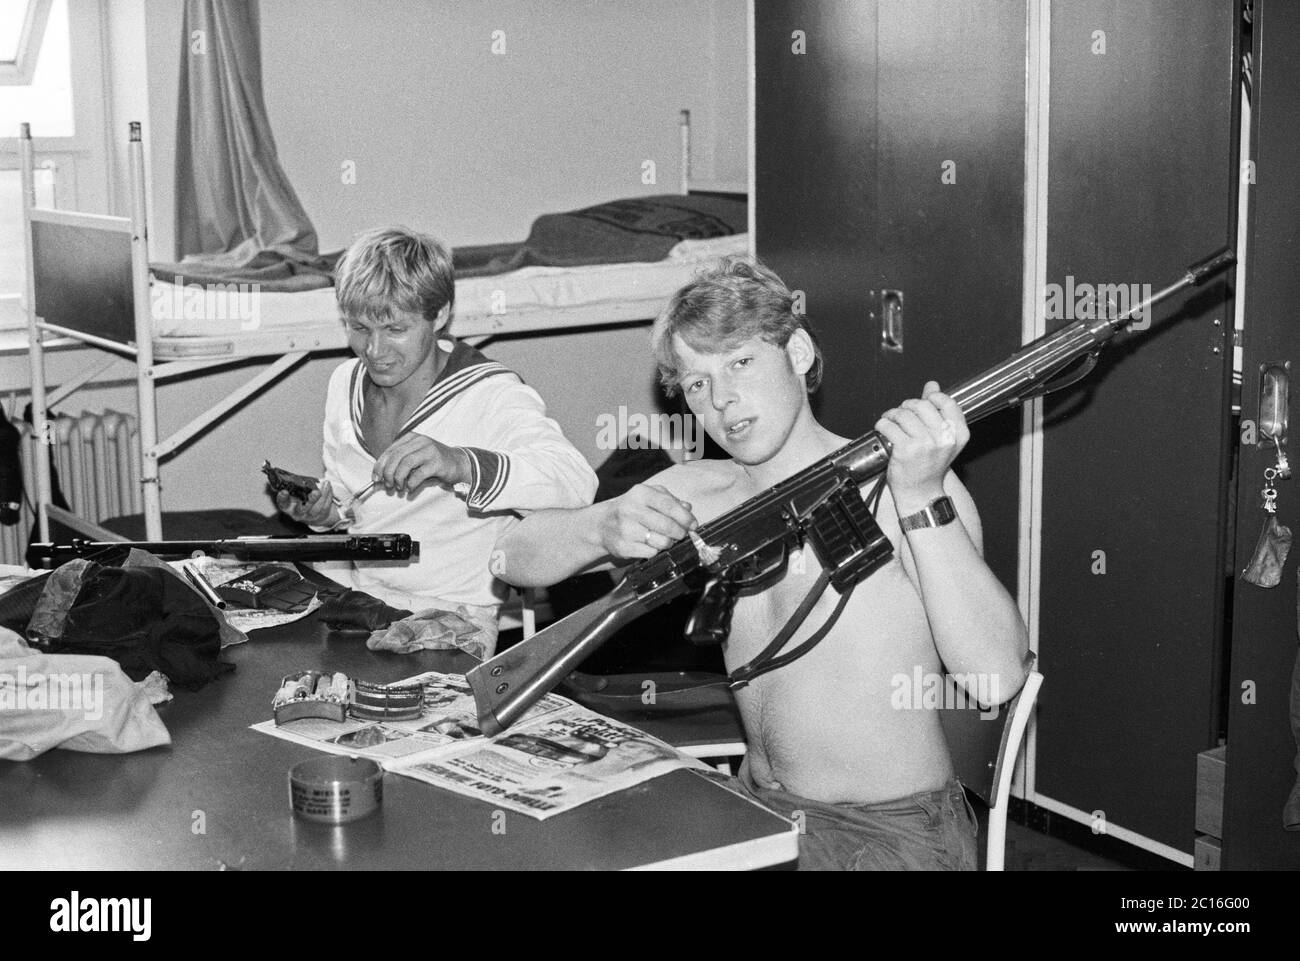 Pistolets de nettoyage, base marine, île de Borkum, août 1981, Basse-Saxe, Allemagne Banque D'Images